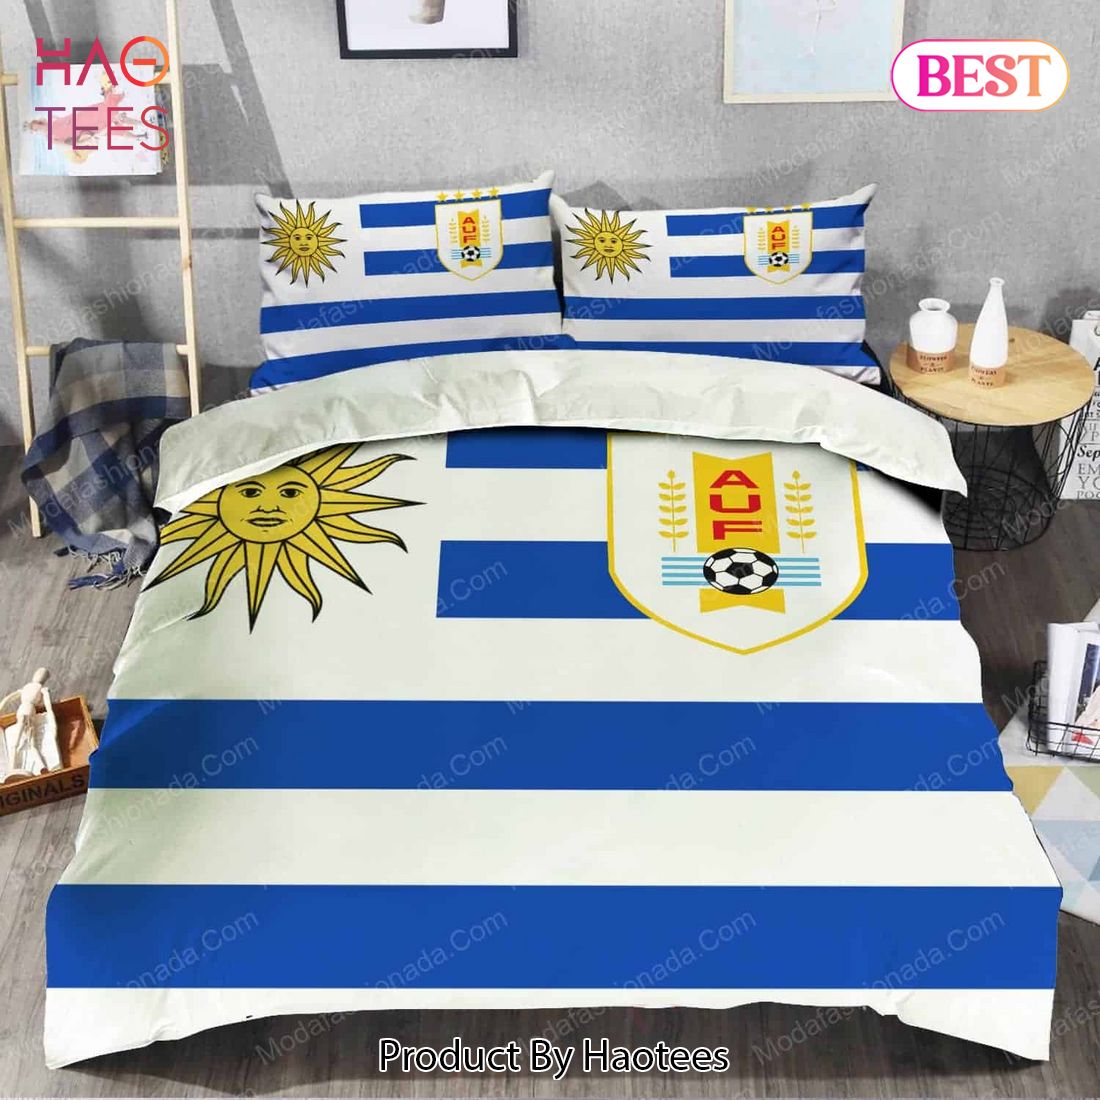 Buy Logo Uruguay National Football Team Bedding Sets Bed Sets, Bedroom Sets, Comforter Sets, Duvet Cover, Bedspread